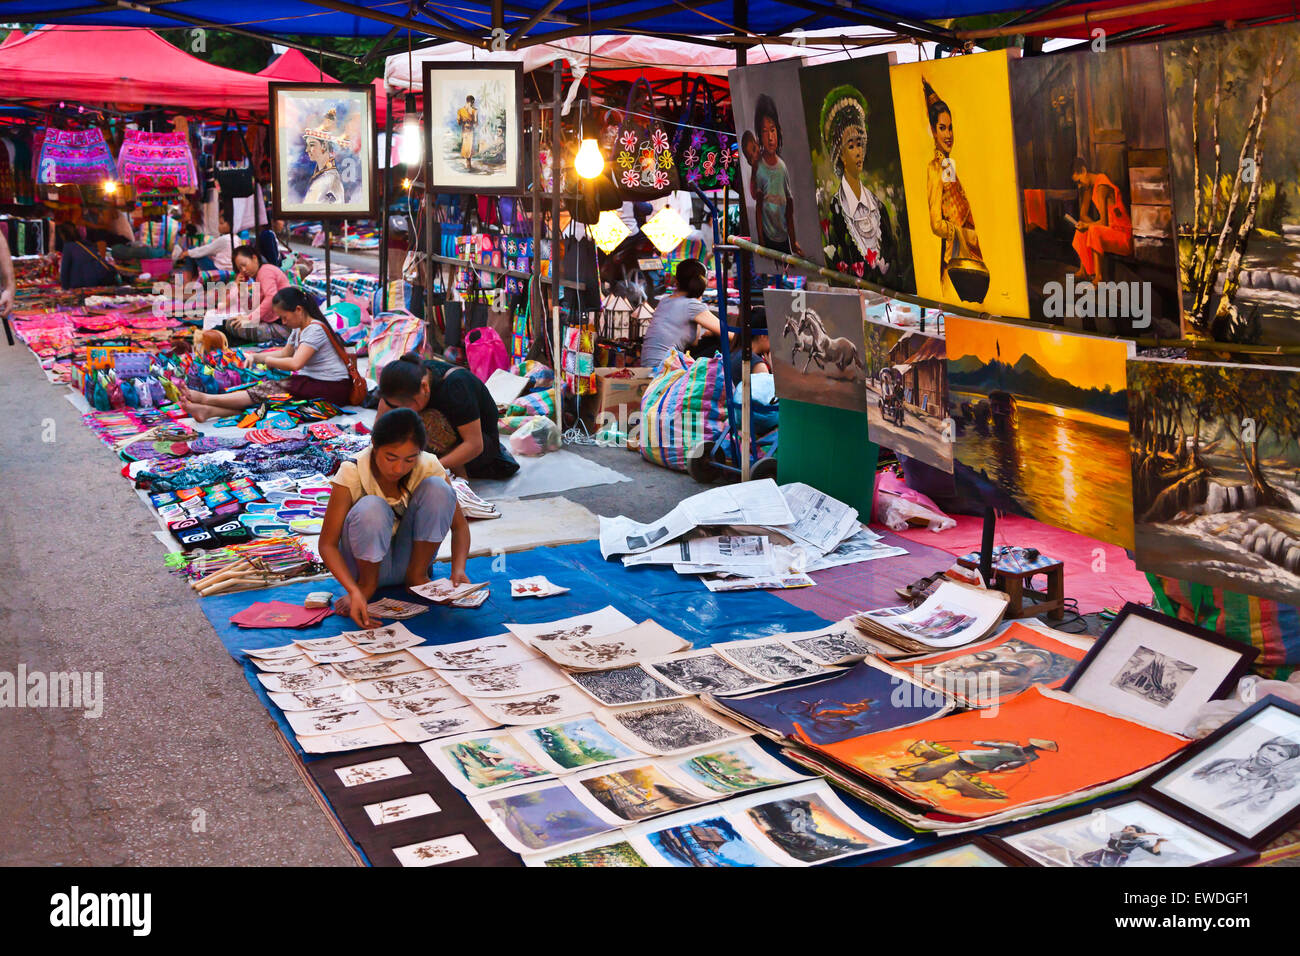 Le célèbre marché de nuit vend une variété de l'artisanat pour les touristes - Luang Prabang, Laos Banque D'Images